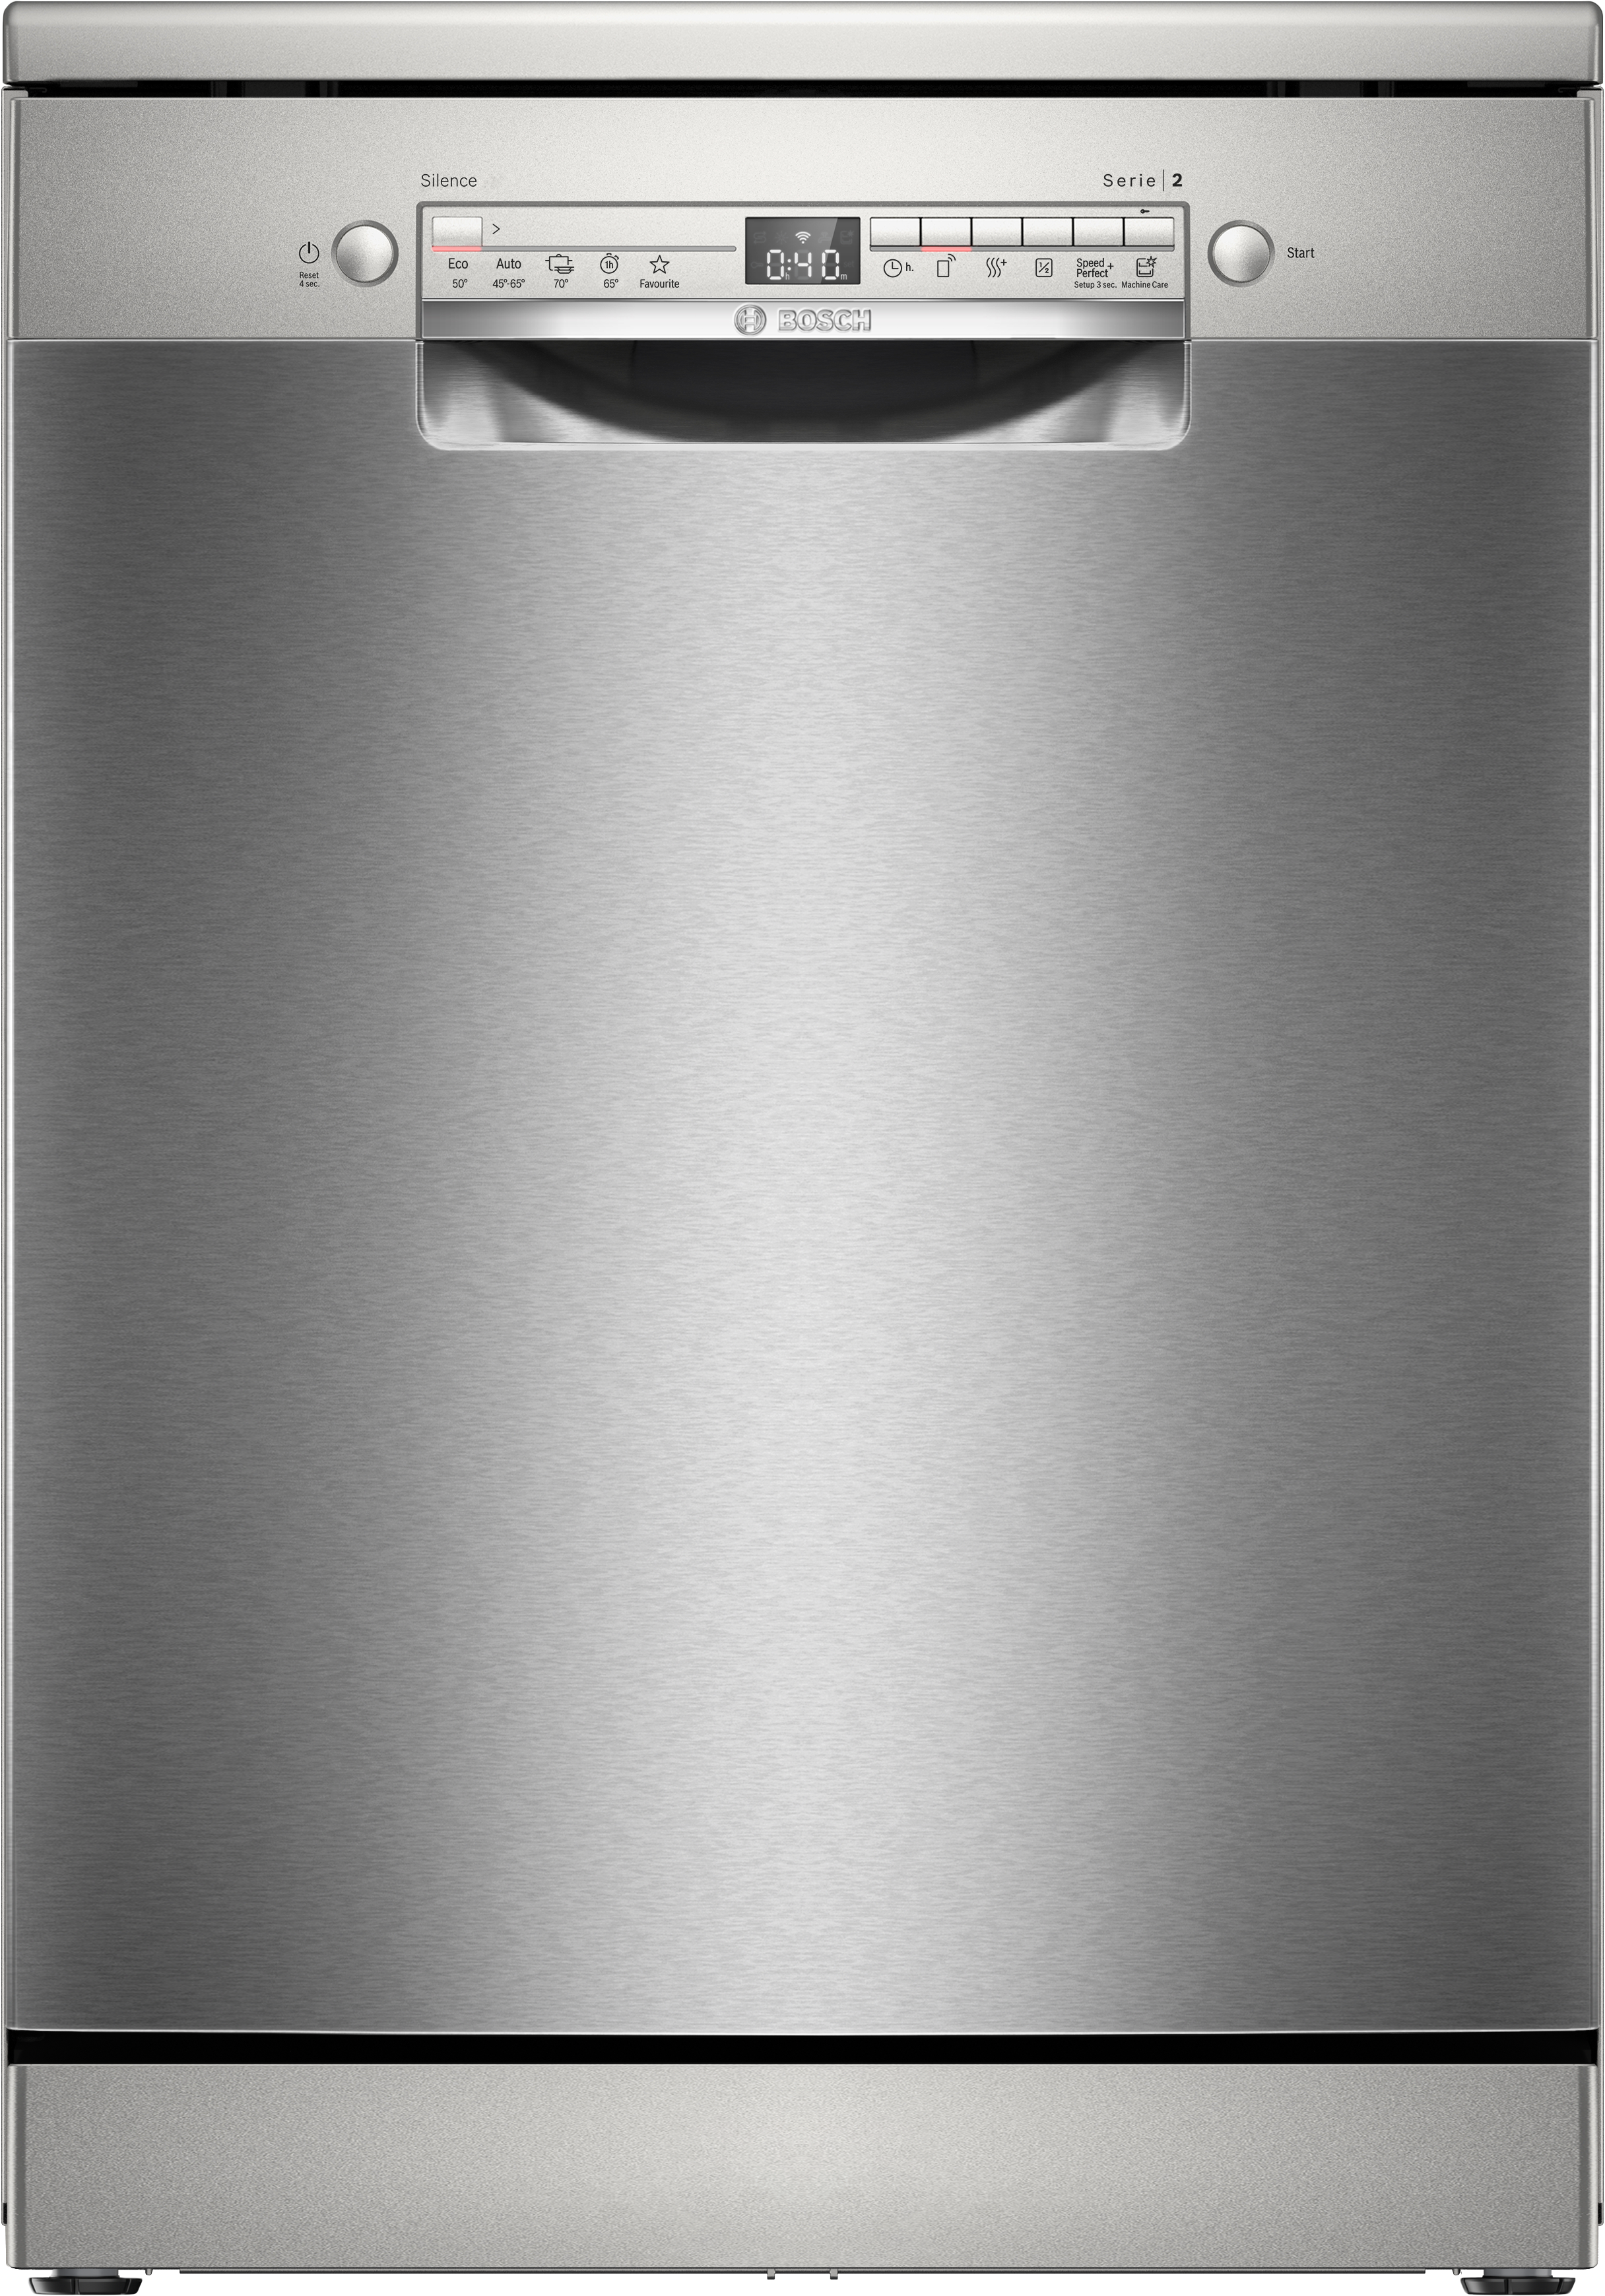 Serija 2, Samostojeća mašina za pranje sudova, 60 cm, Nerđajući čelik, SMS2HVI02E